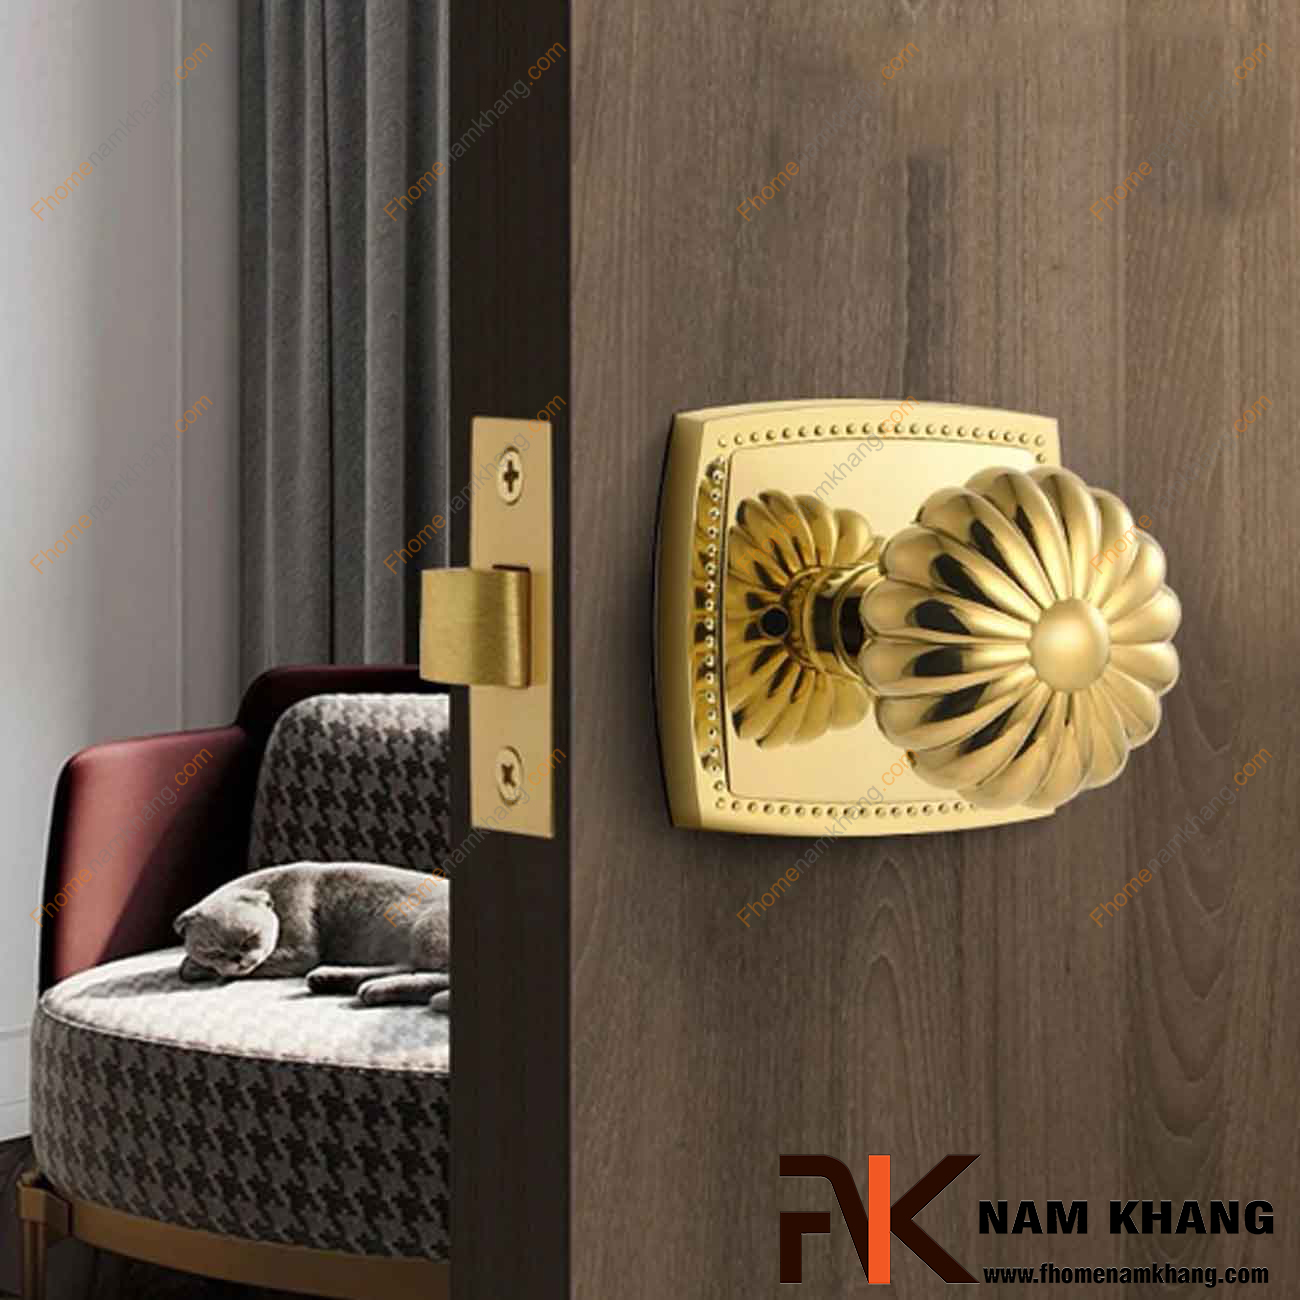 Khóa chốt cửa màu vàng bóng NK579C-PVD có thiết kế cách điệu, đường nét mềm mại, mang giá trị thẩm mĩ cao.